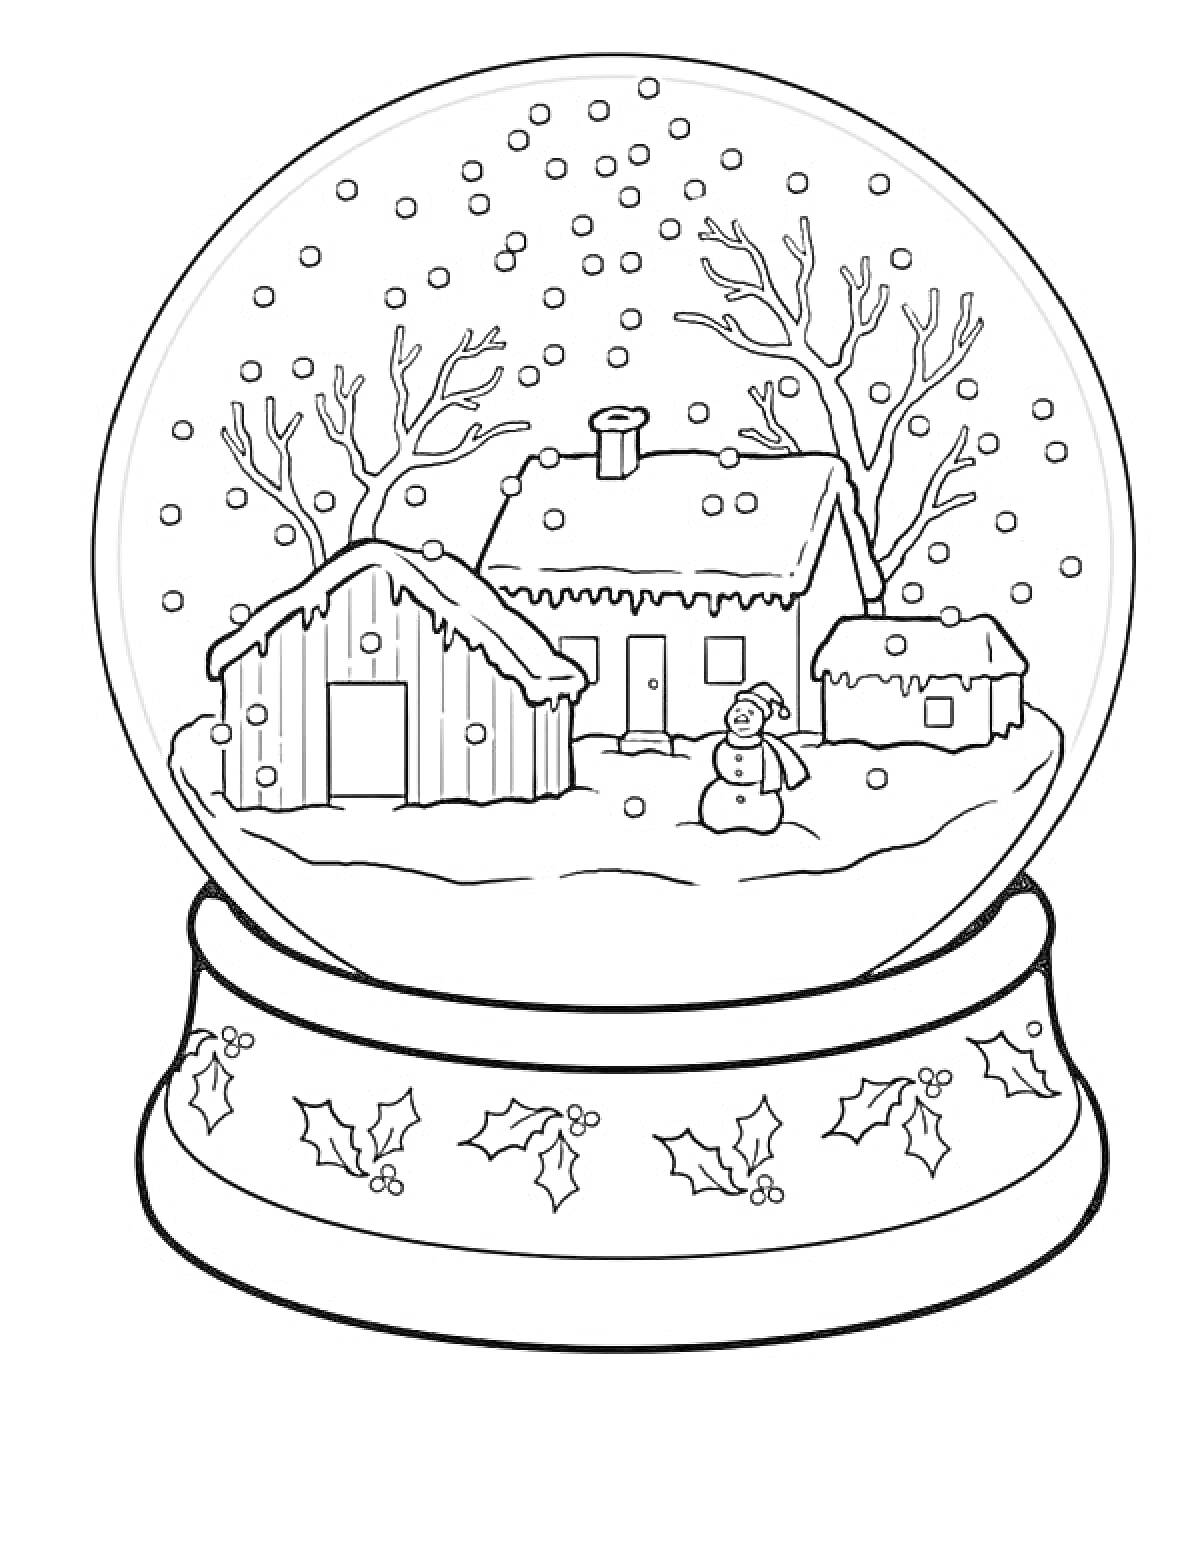 Раскраска Снежный шар с зимним пейзажем, включающим домик, сарай, небольшой домик и снеговик, вокруг падает снег, деревья без листьев